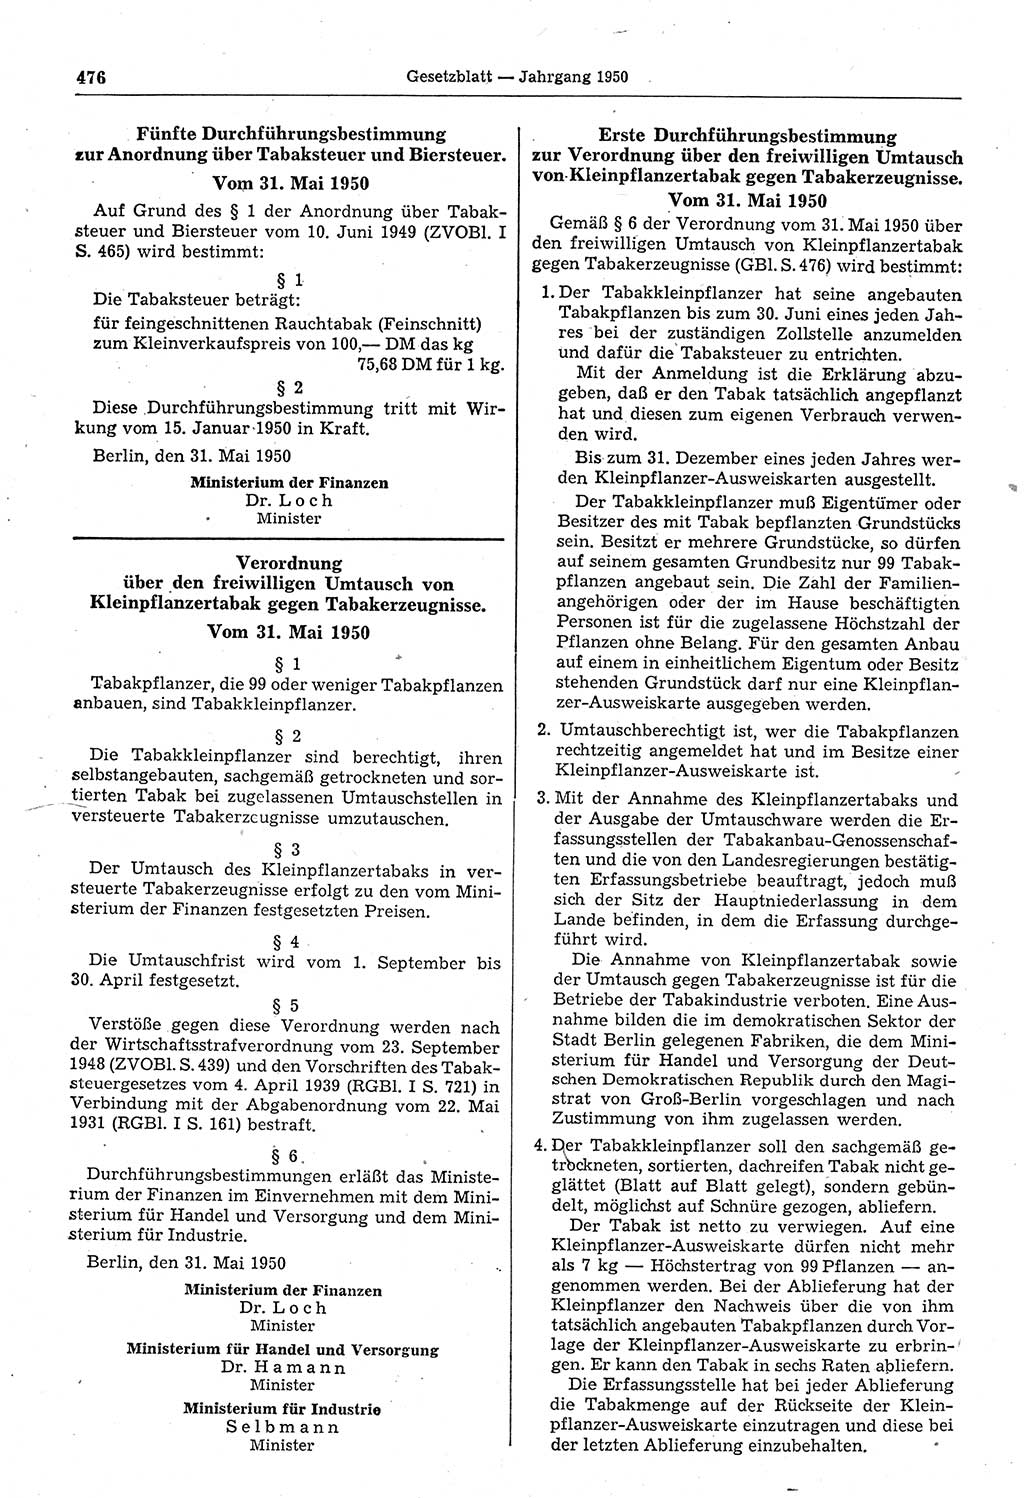 Gesetzblatt (GBl.) der Deutschen Demokratischen Republik (DDR) 1950, Seite 476 (GBl. DDR 1950, S. 476)